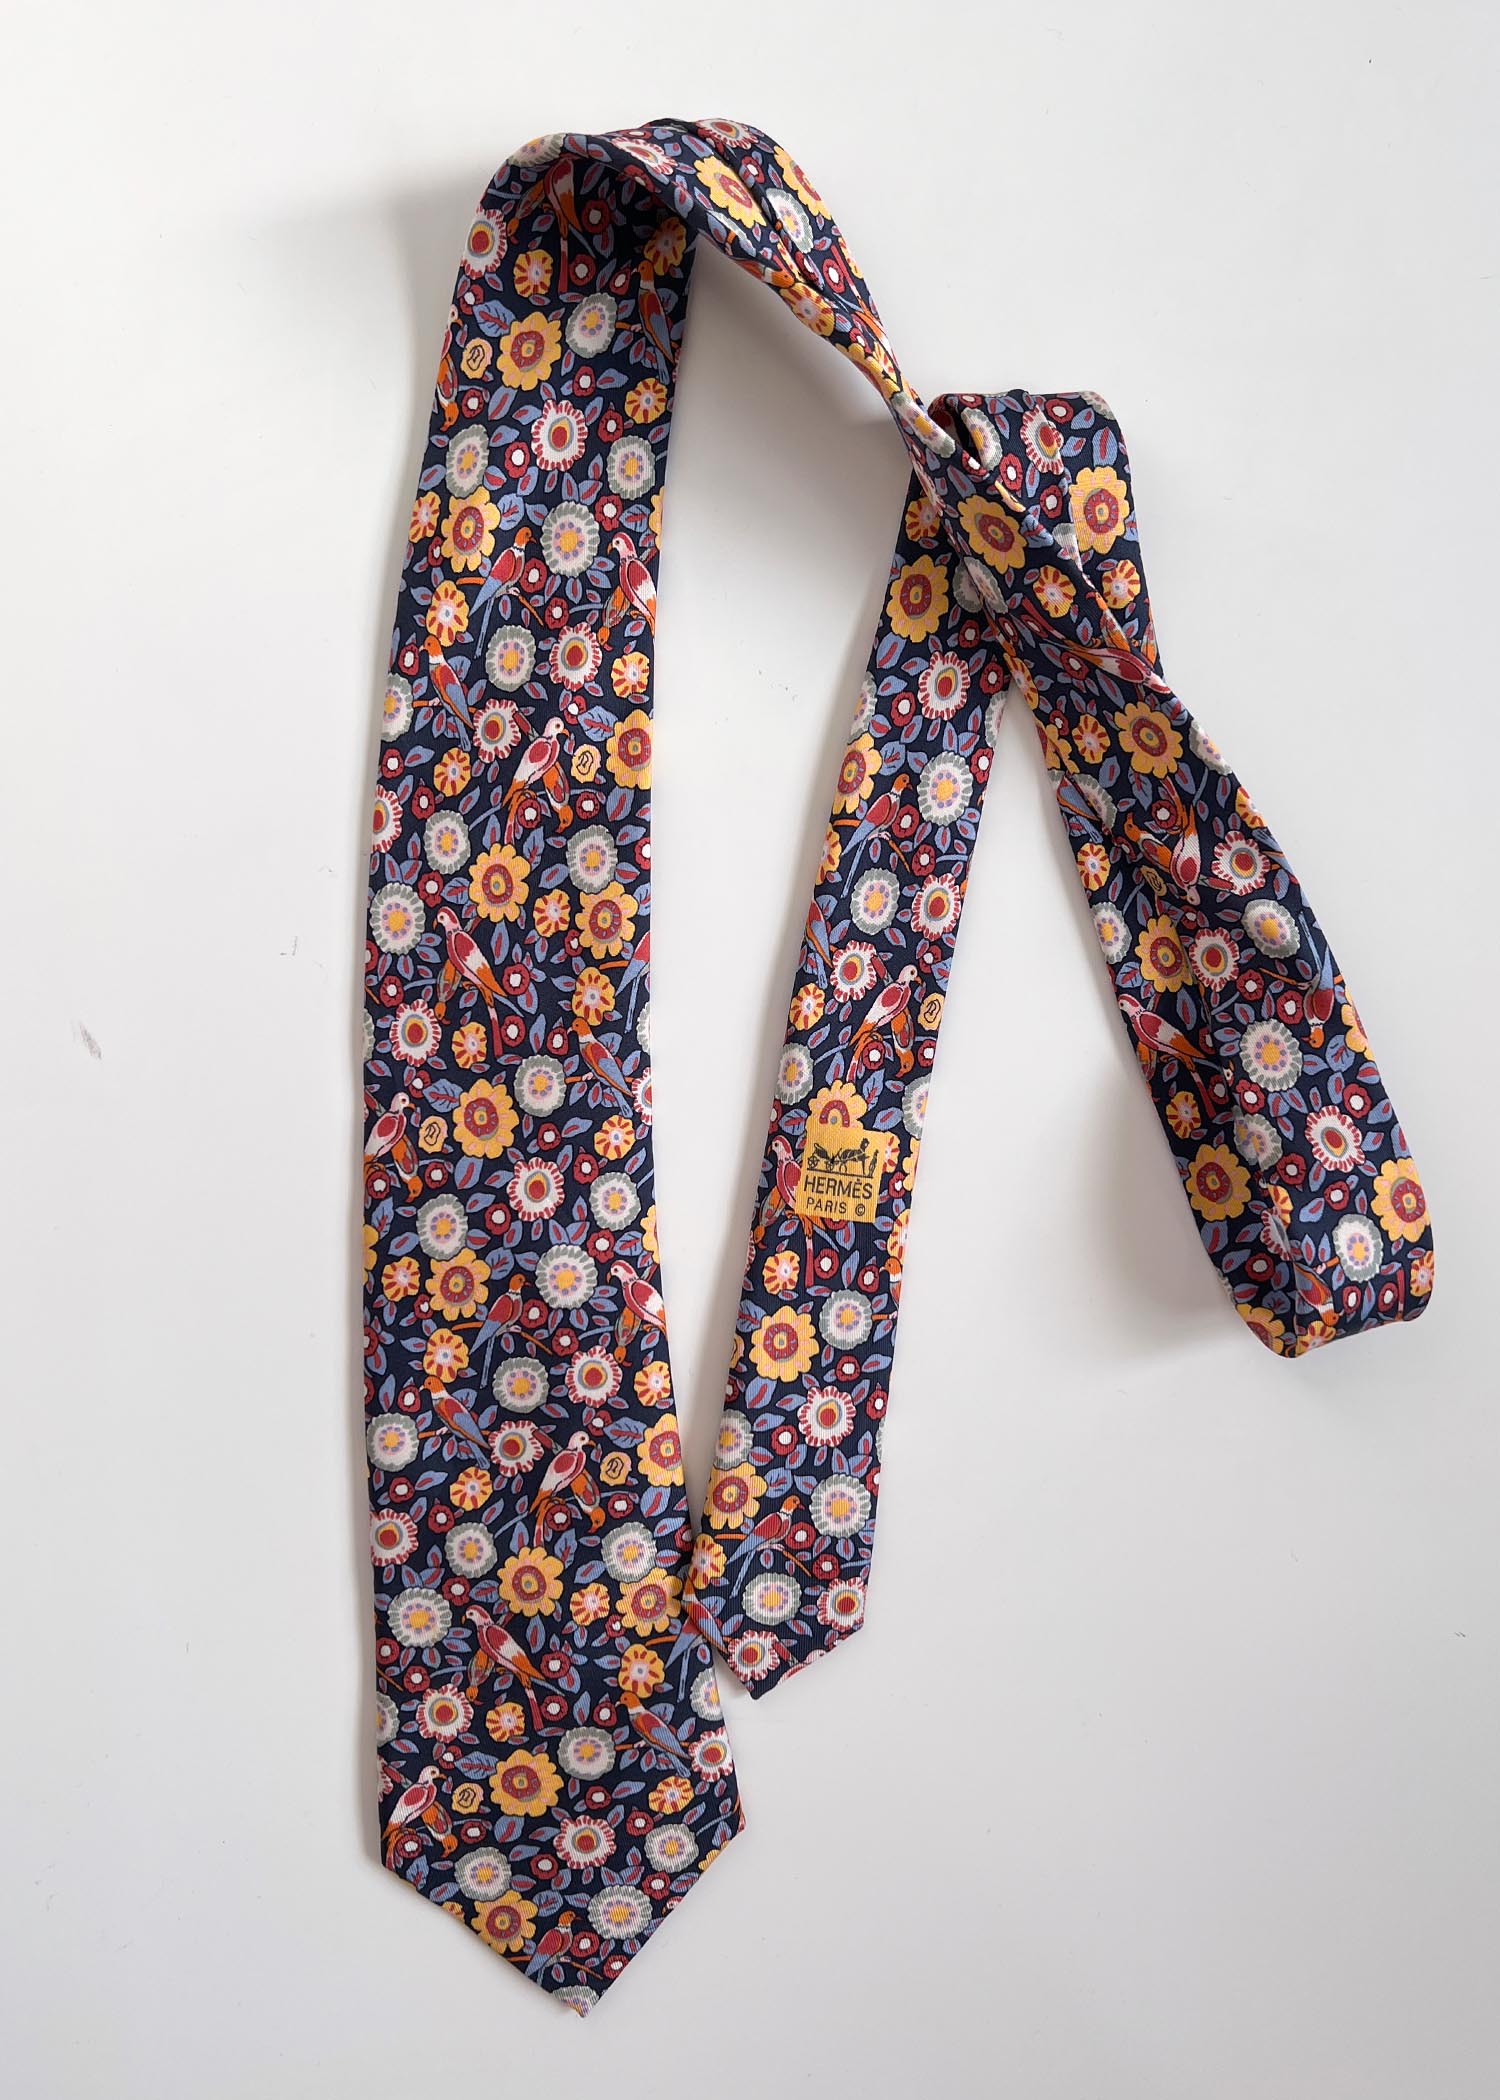 HERMES floral neck-tie